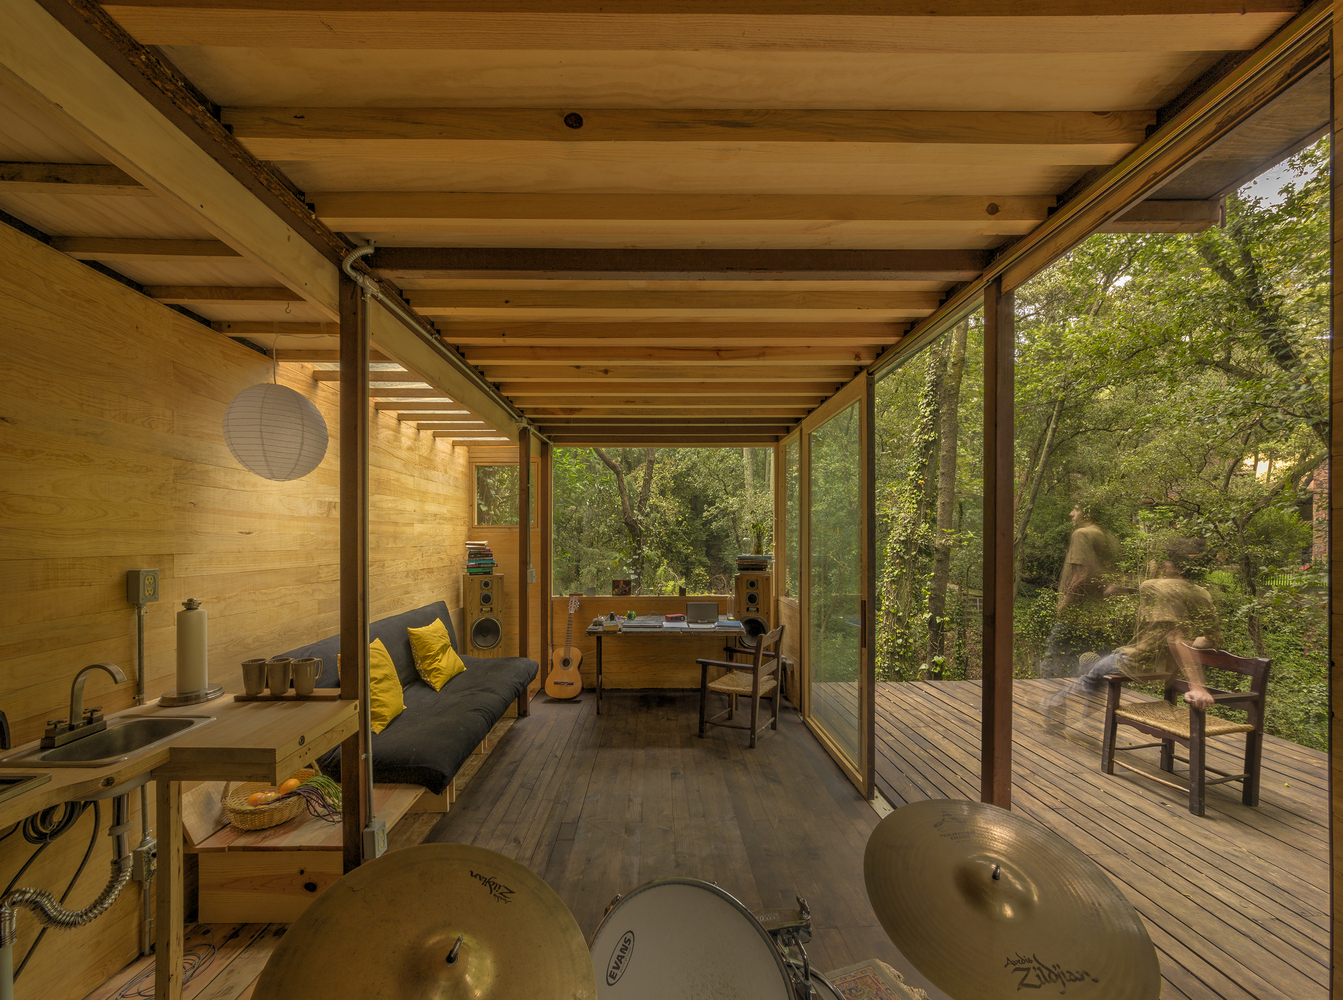 Hình ảnh không gian sinh hoạt thoáng đãng, nội thất tinh giản bên trong ngôi nhà gỗ giữa rừng cây.